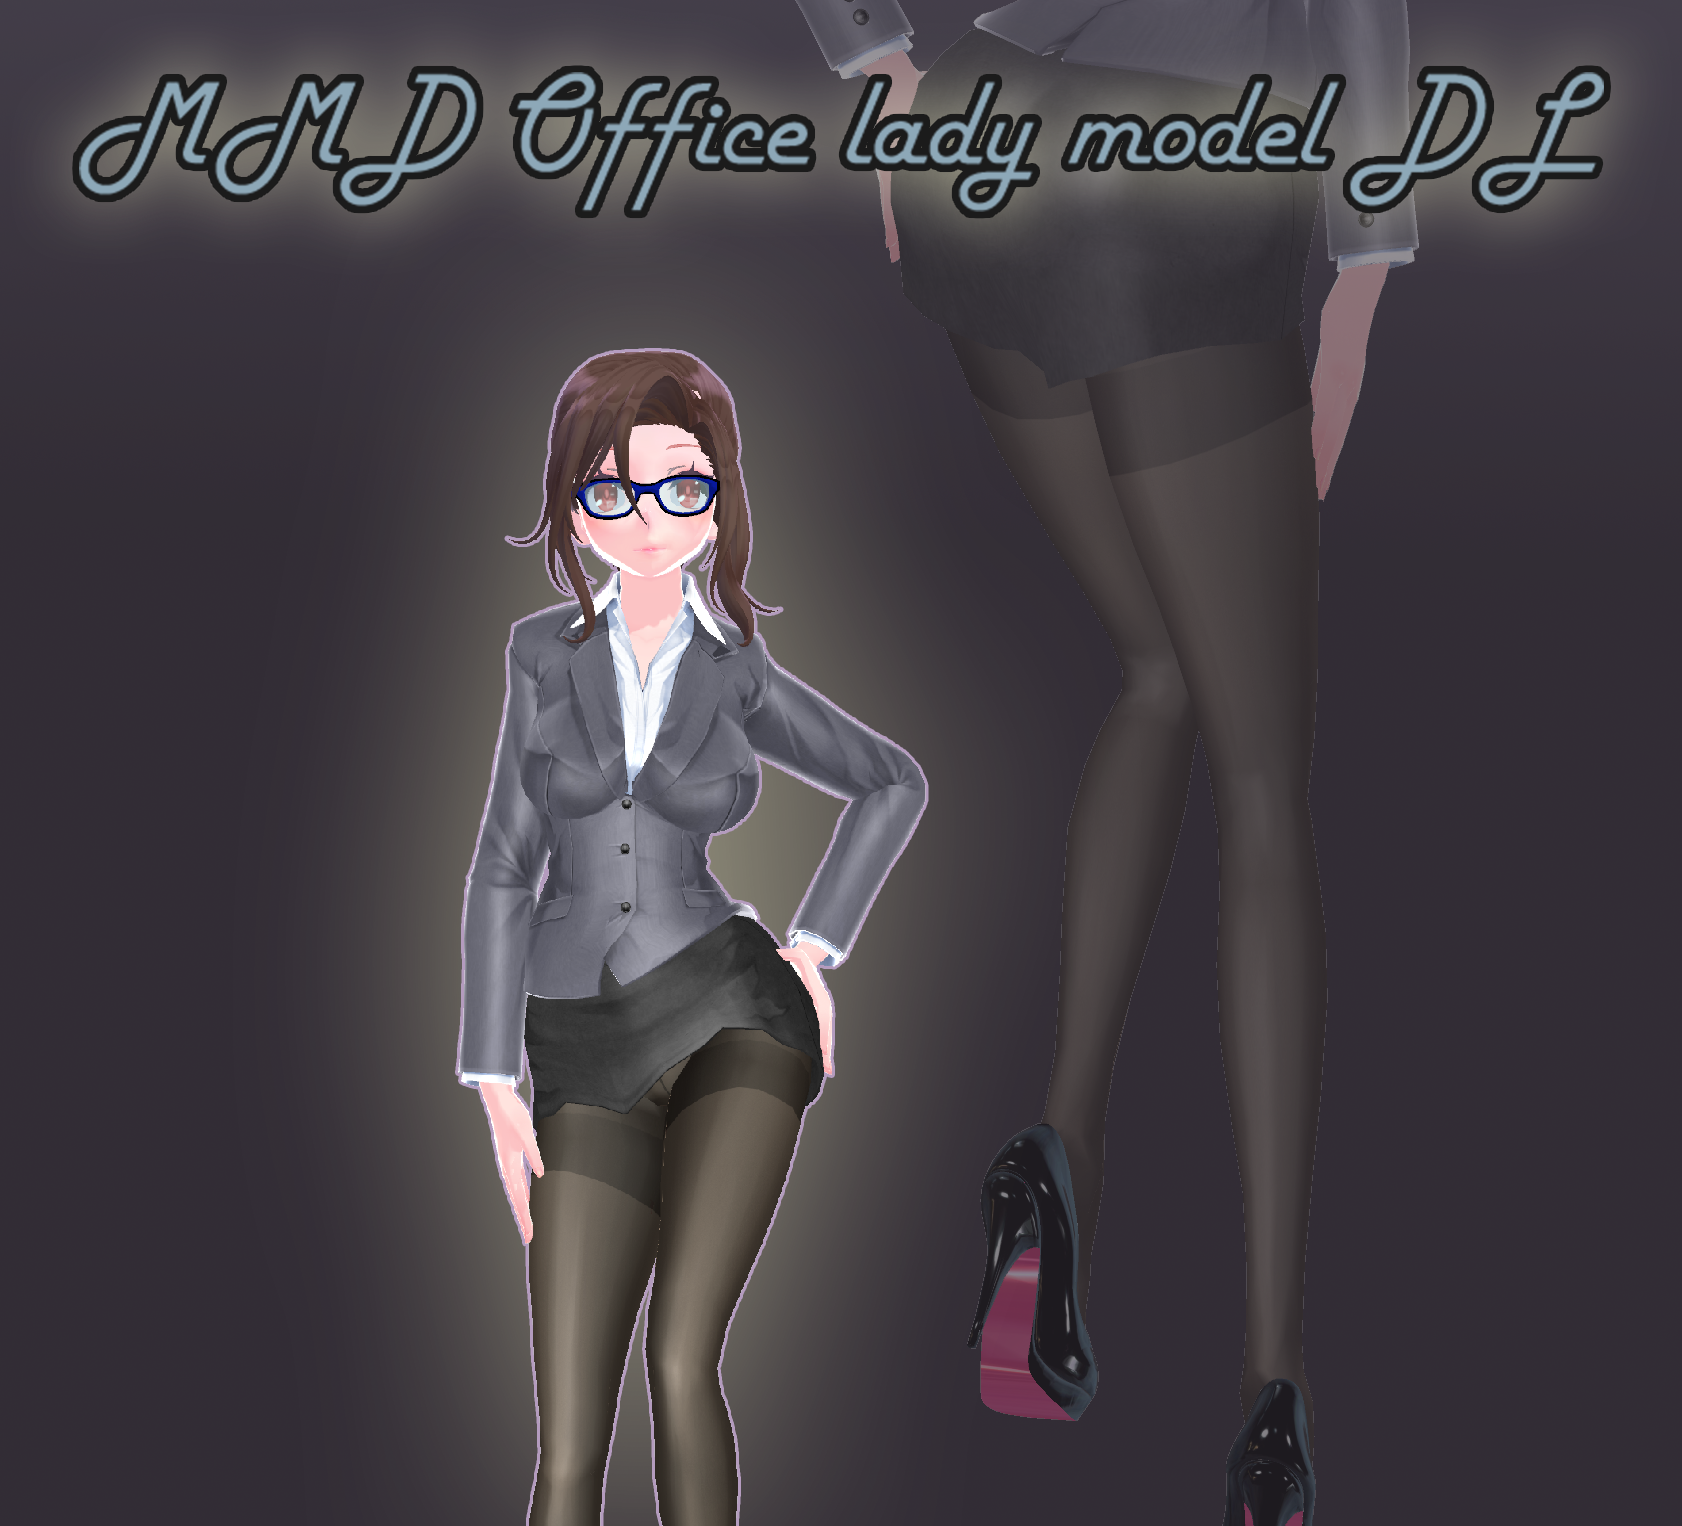 MMD] Office lady model [DL] by Hydrogen-hydride on DeviantArt